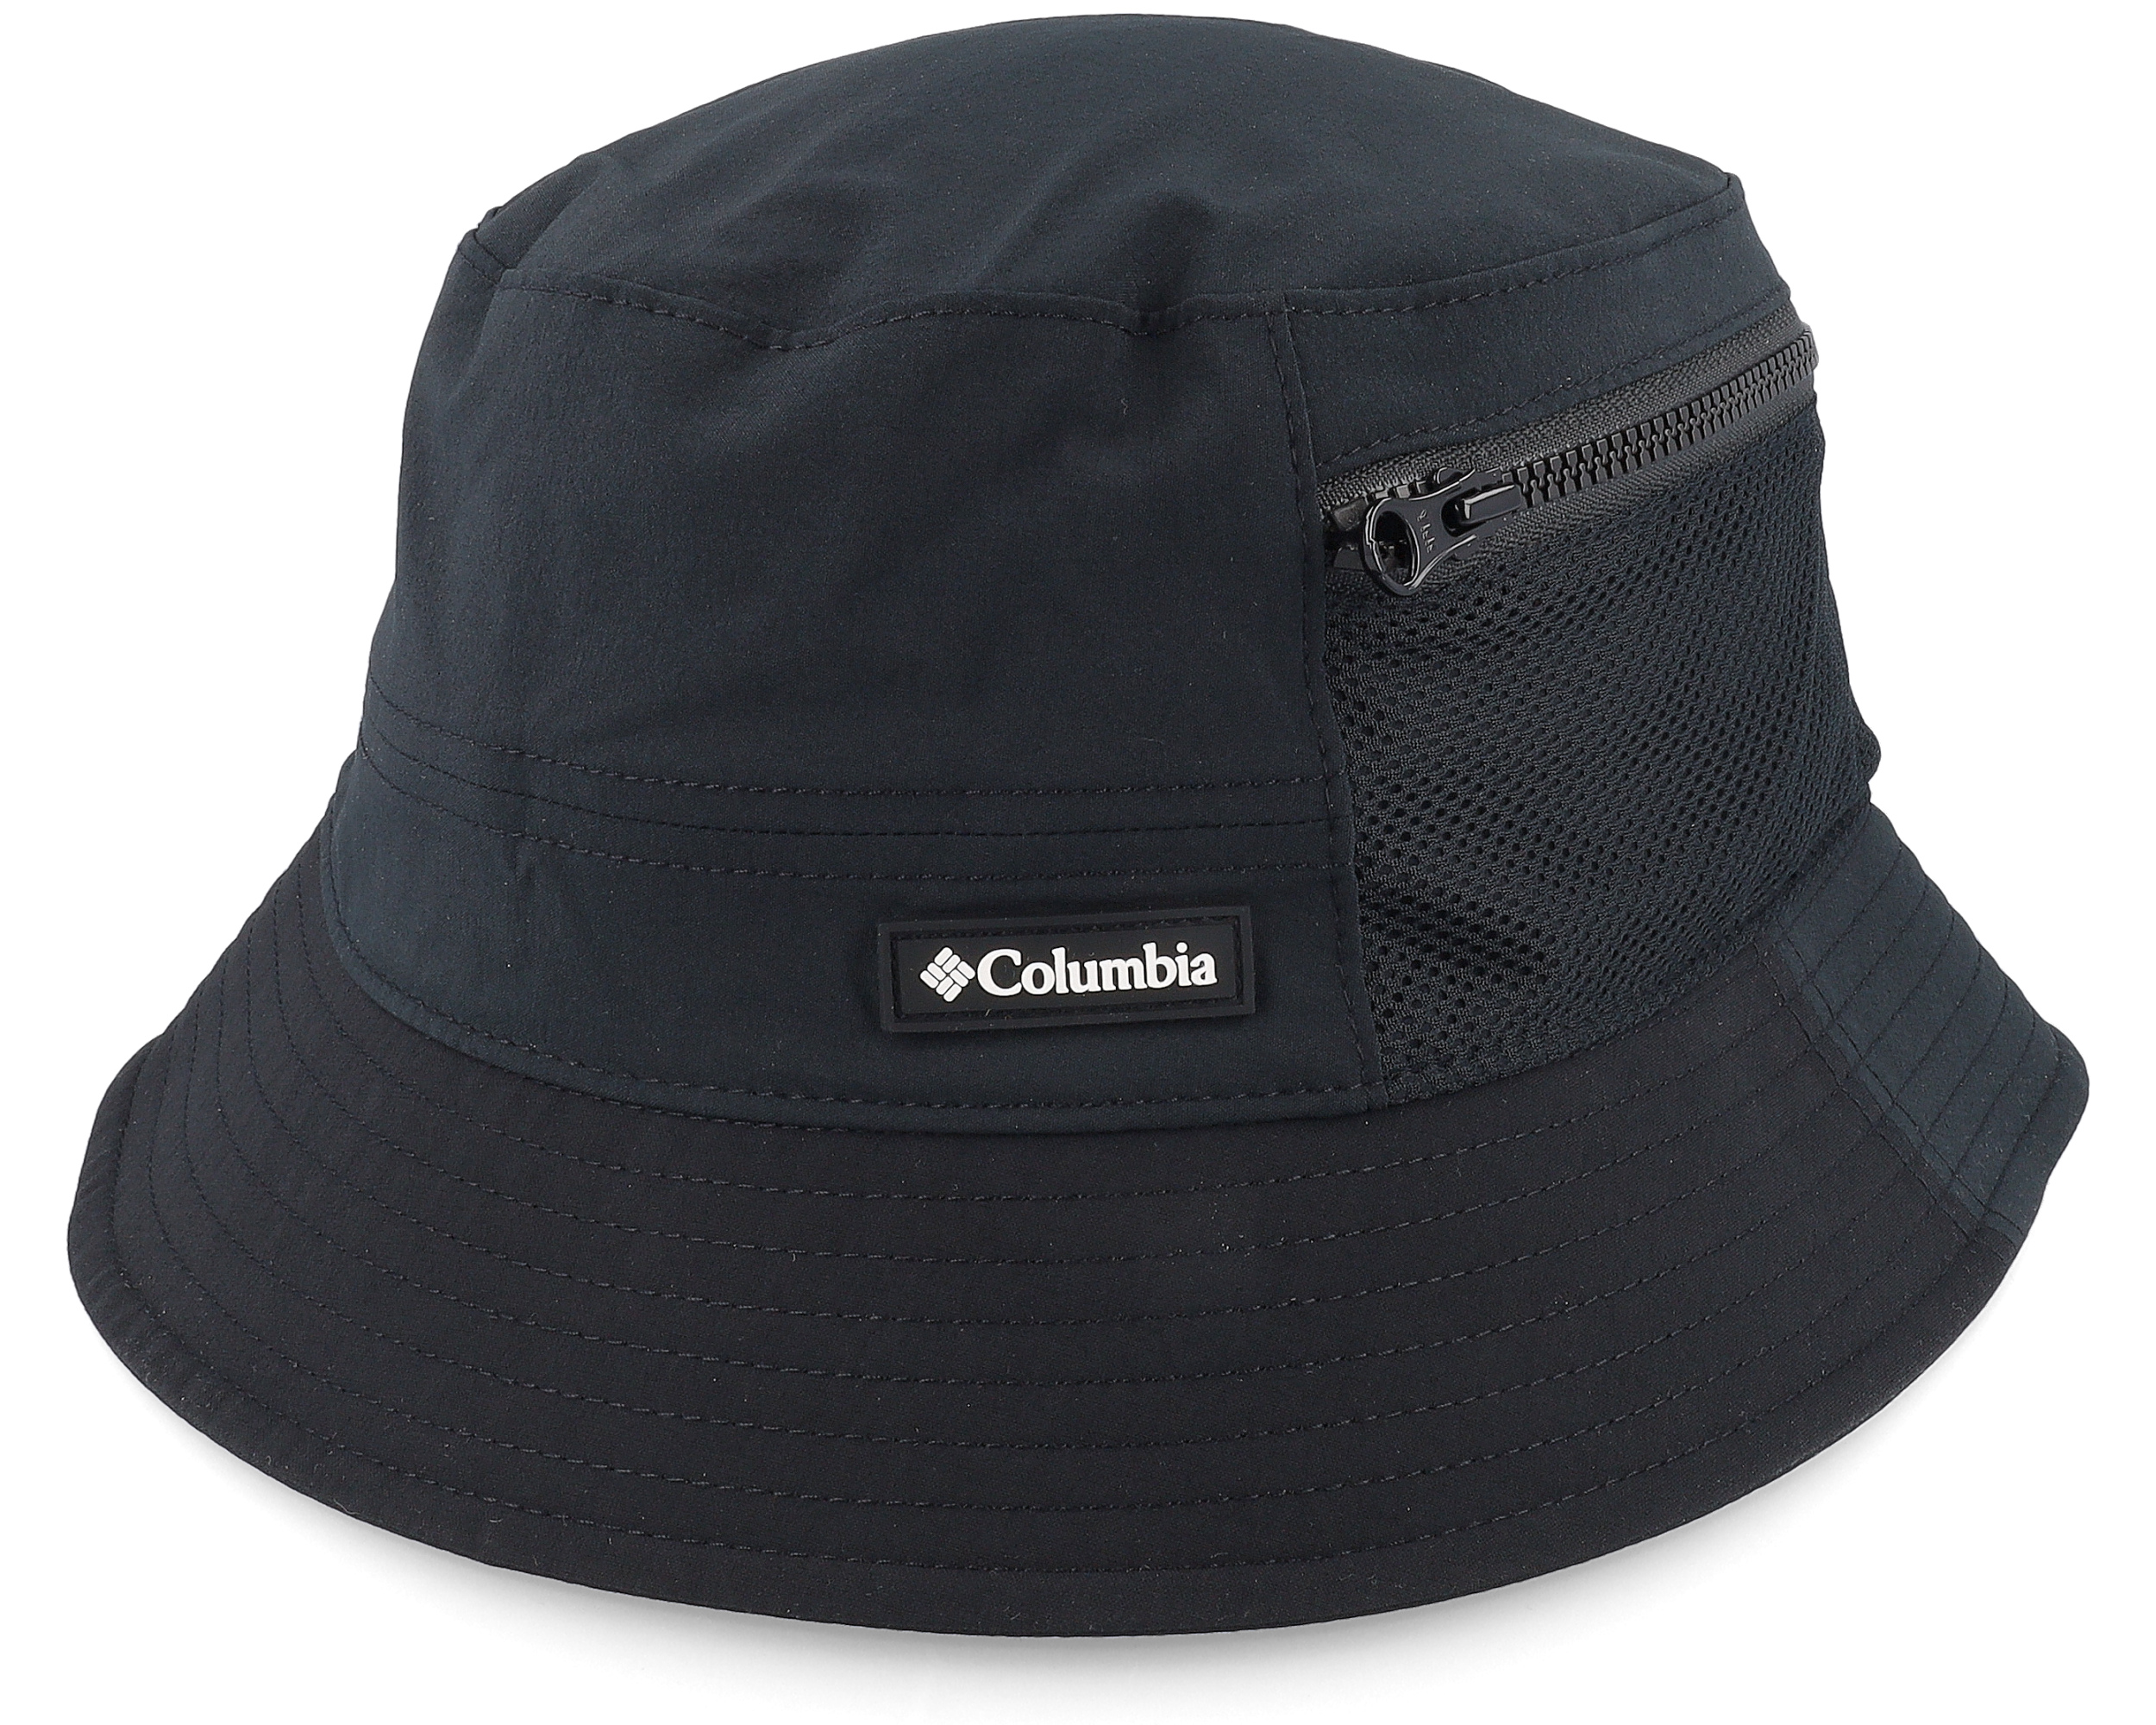 Trek Hat Black Bucket - Columbia hat